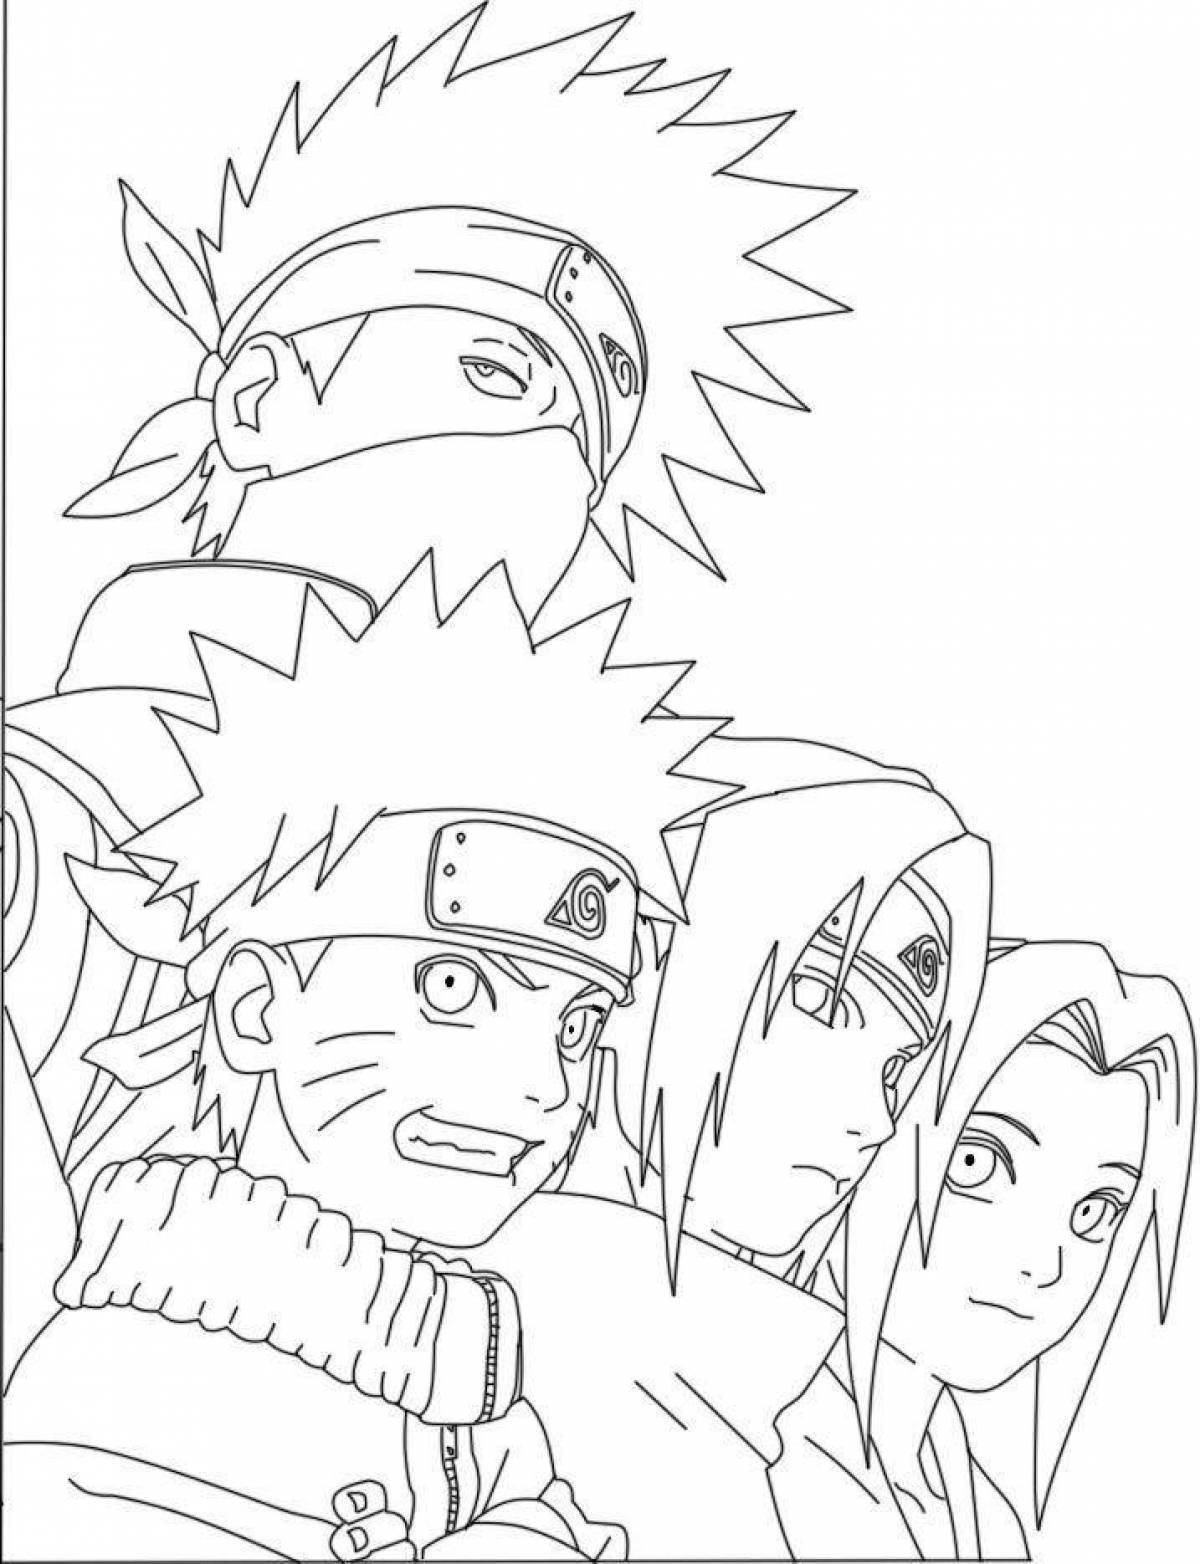 Naruto and sasuke #3